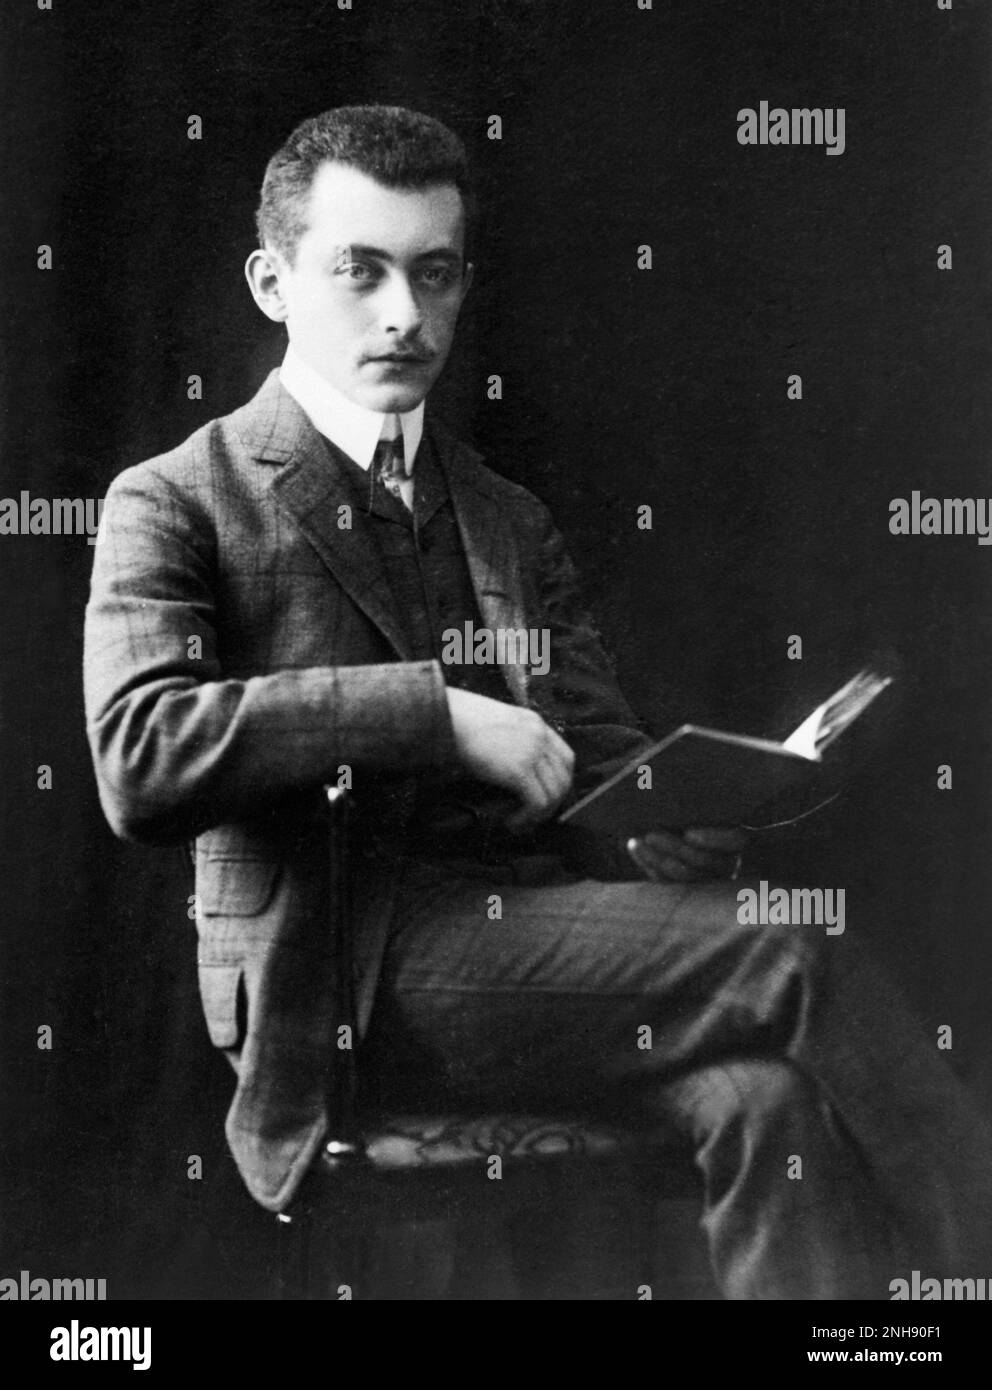 Porträt von Max Born Read, c. Anfang des 20. Jahrhunderts. Geboren (1882-1970) war ein deutscher Physiker und Mathematiker, der maßgeblich an der Entwicklung der Quantenmechanik beteiligt war. Er gewann den Nobelpreis für Physik 1954. Stockfoto